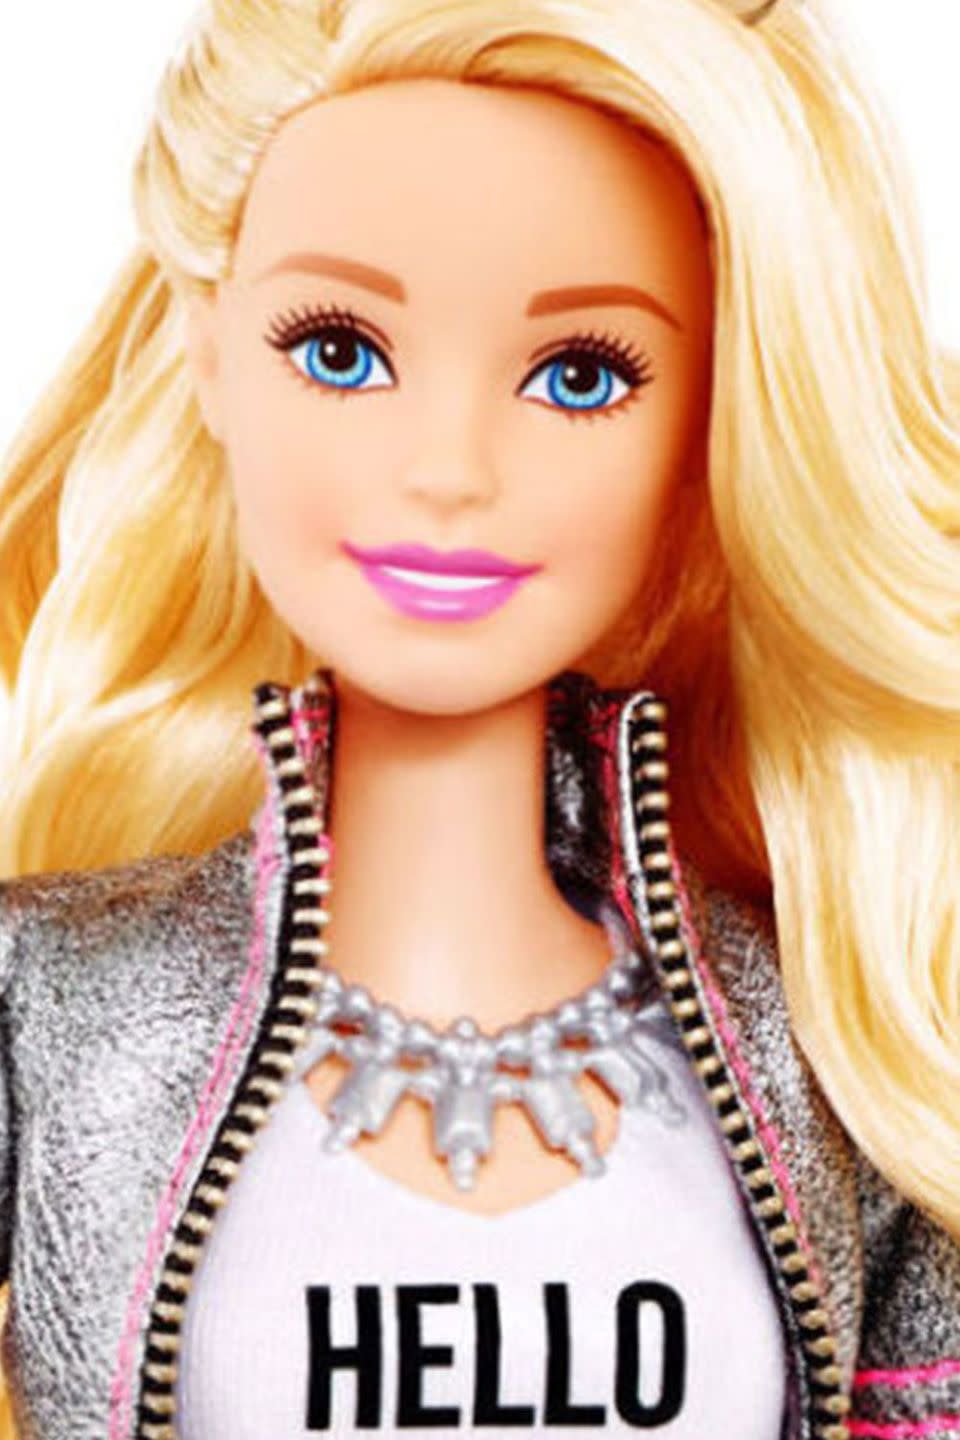 Doll, Barbie, Hair, Face, Toy, Blond, Eyebrow, Beauty, Lip, Forehead, 